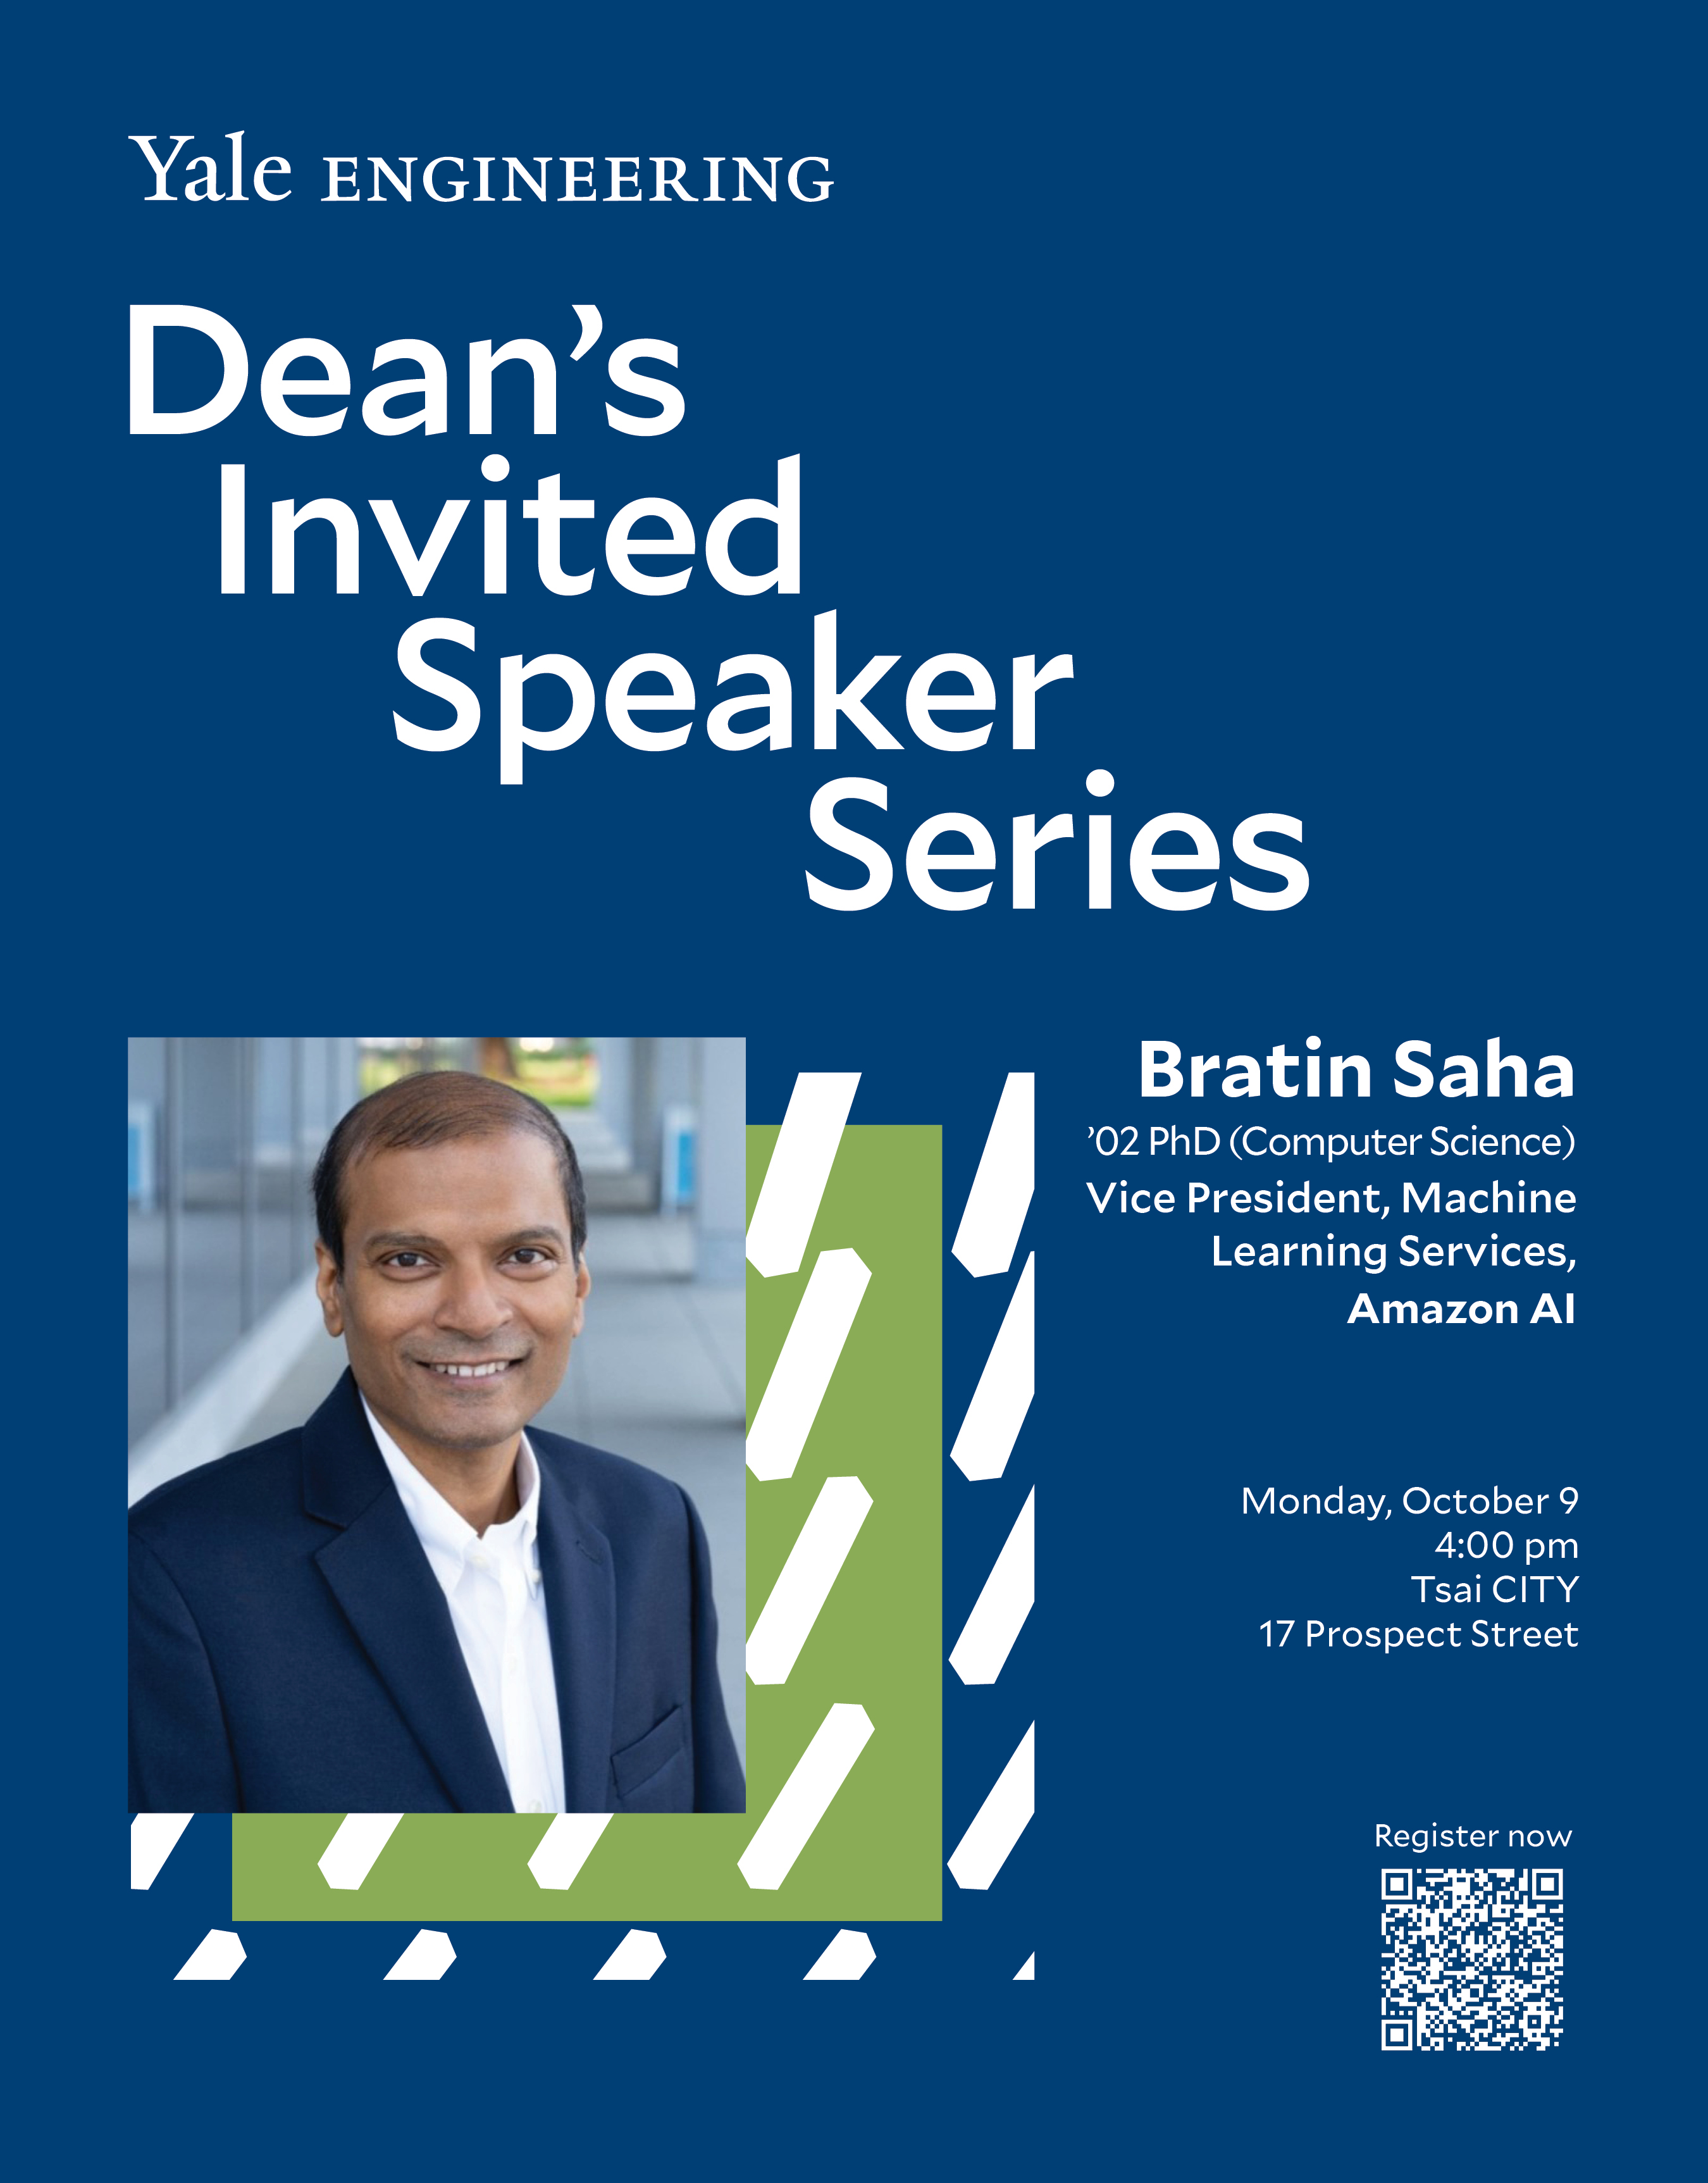 Dean's Invited Speaker Series